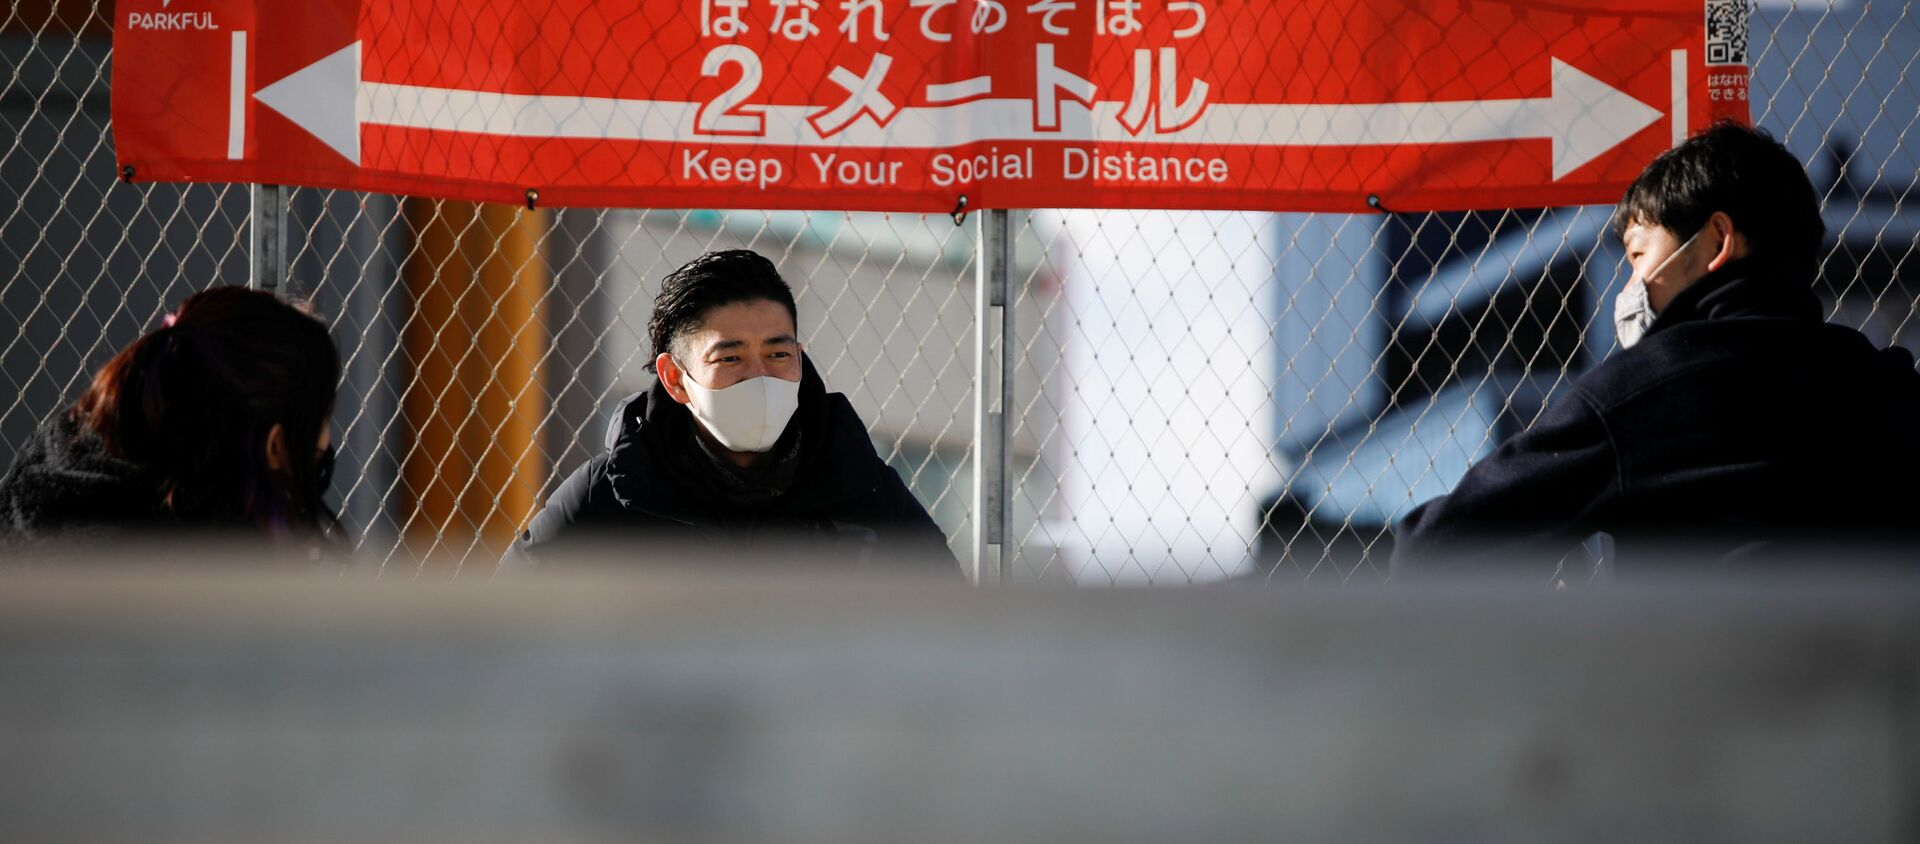 Люди в масках на фоне плаката о необходимости соблюдения социальной дистанции в Токио - Sputnik 日本, 1920, 16.01.2021